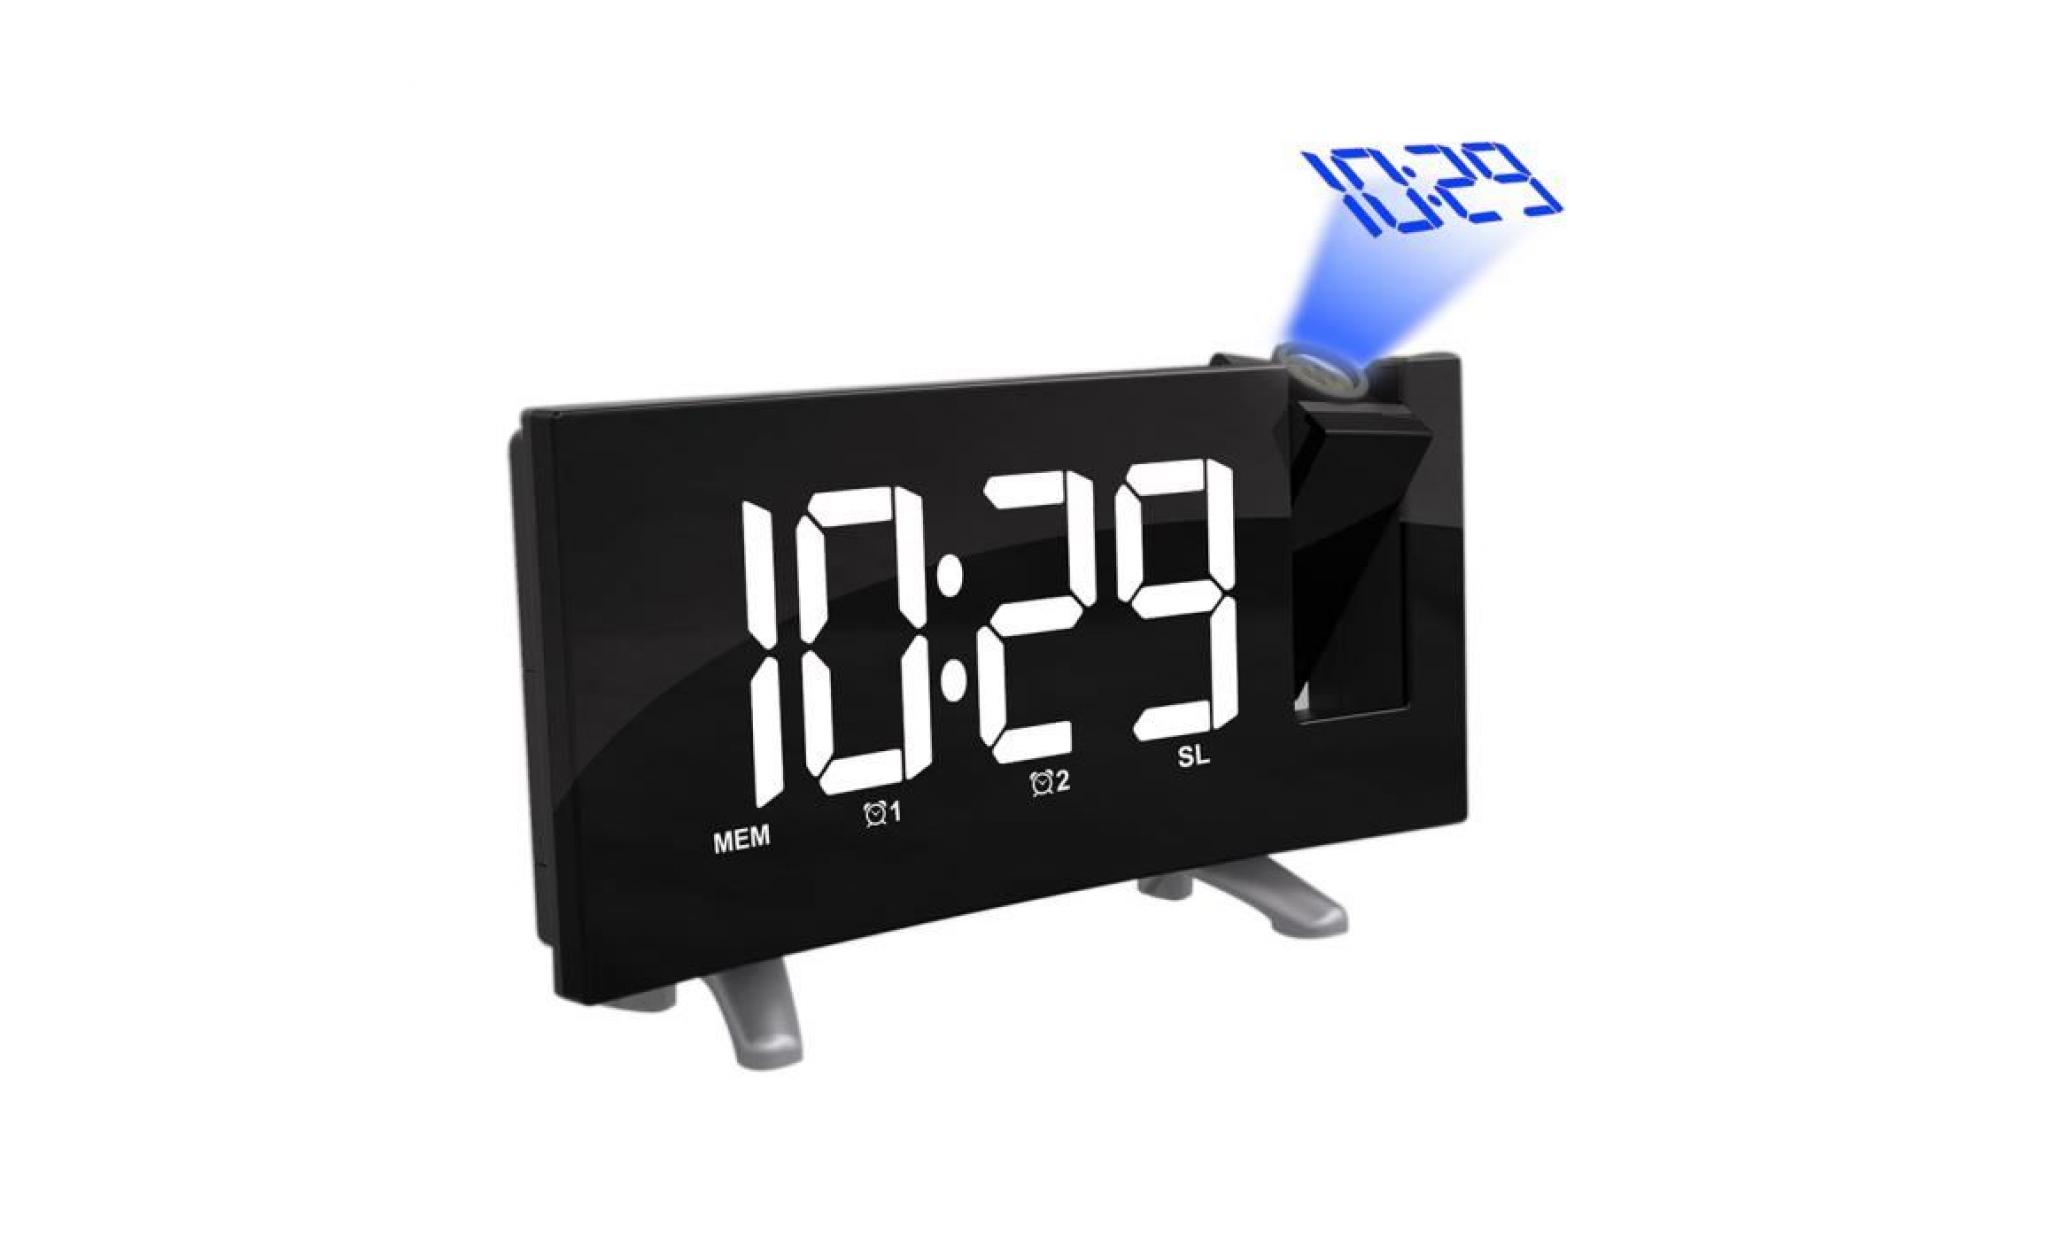 radio réveil projection plafond alarme fm double alarme horloge numérique usb fonction snooze 4 luminosités led